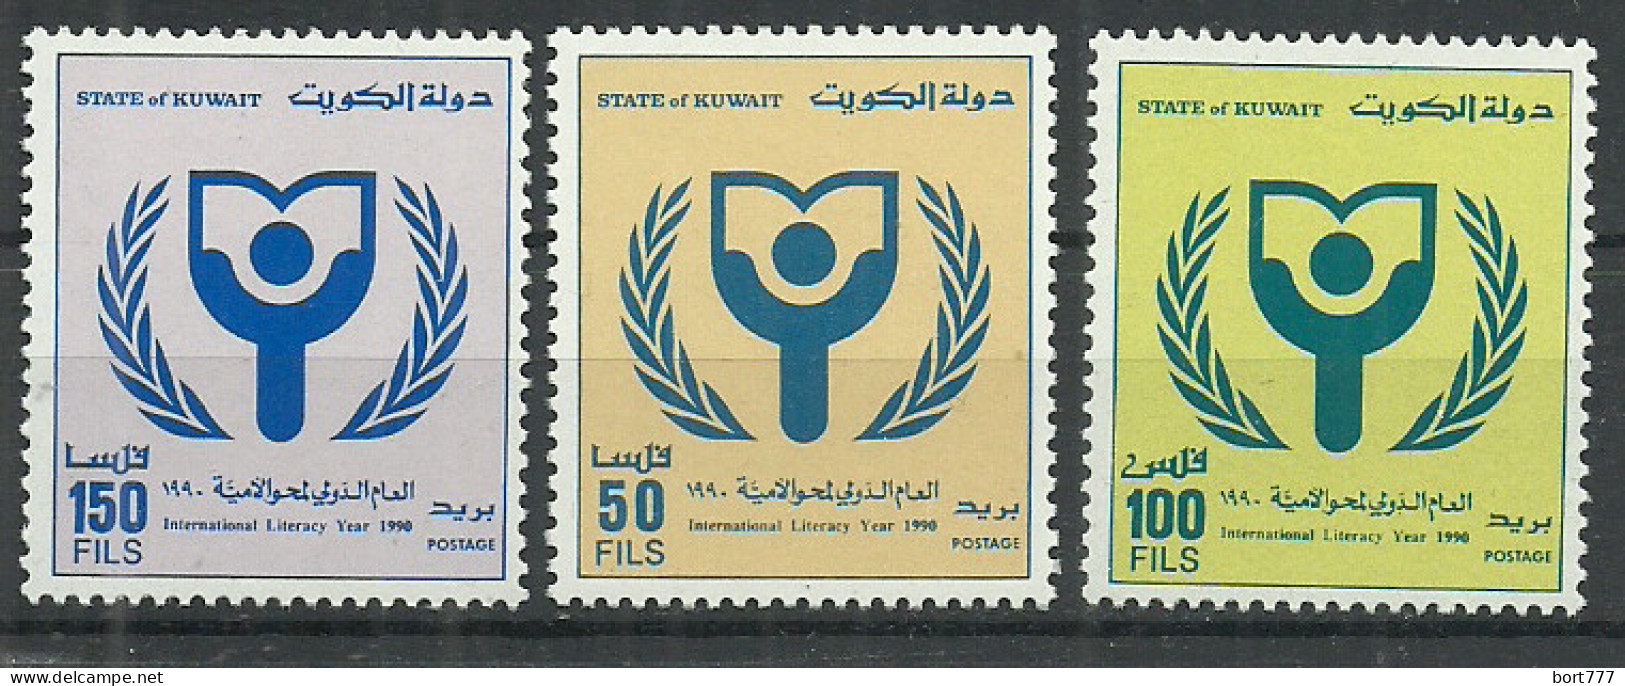 Kuwait 1992 Year, Mint Stamps MNH (** )  Mi # 1295-97 - Kuwait